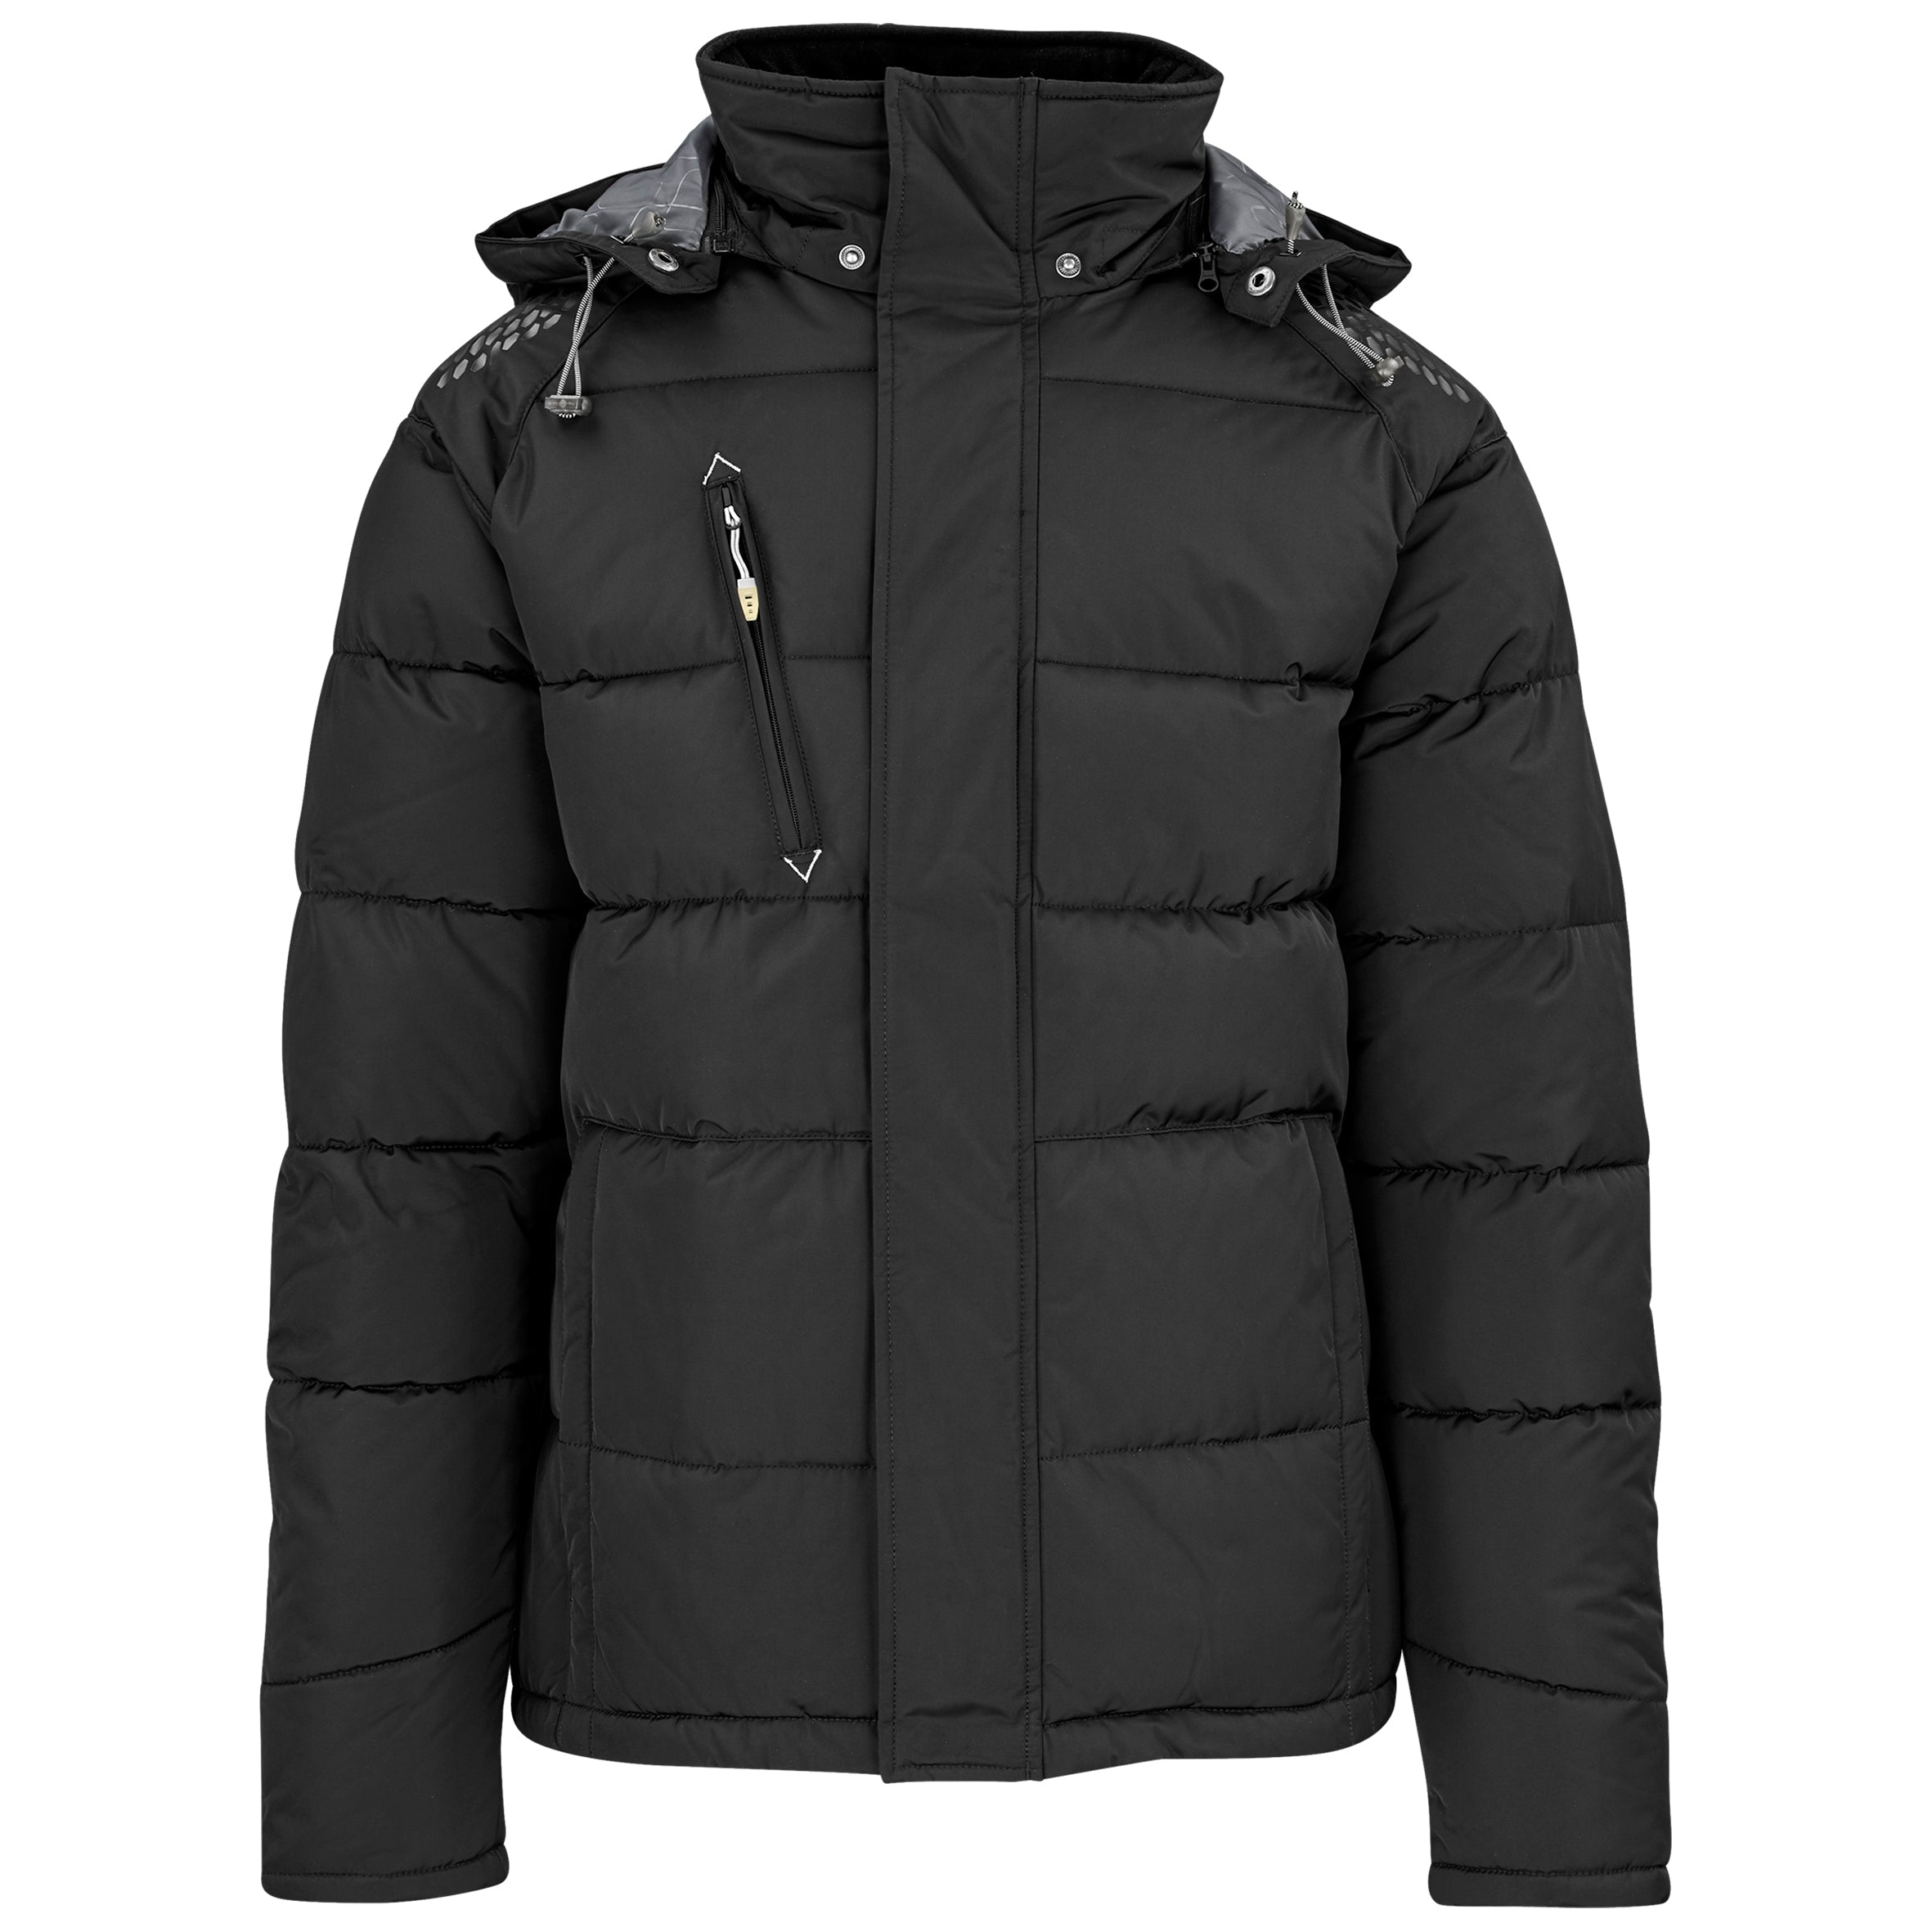 Mens Balkan Insulated Jacket-Coats & Jackets-2XL-Black-BL